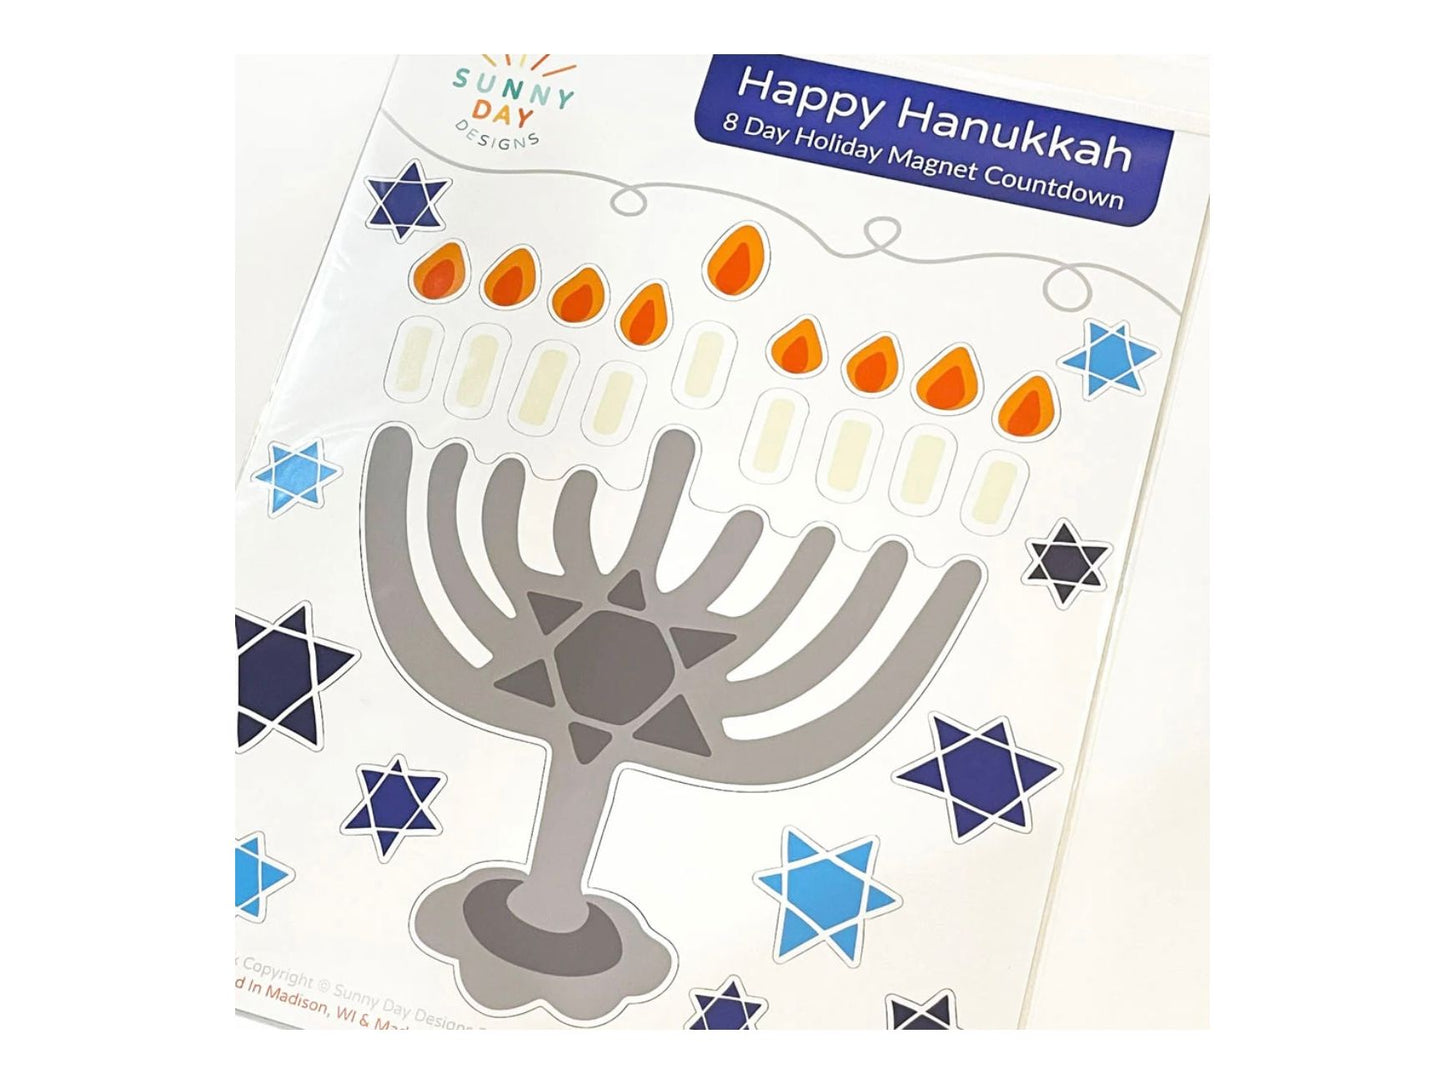 Happy Hanukkah Jewish Vinyl Magnet Set, Chanukah Menorah Holiday Countdown